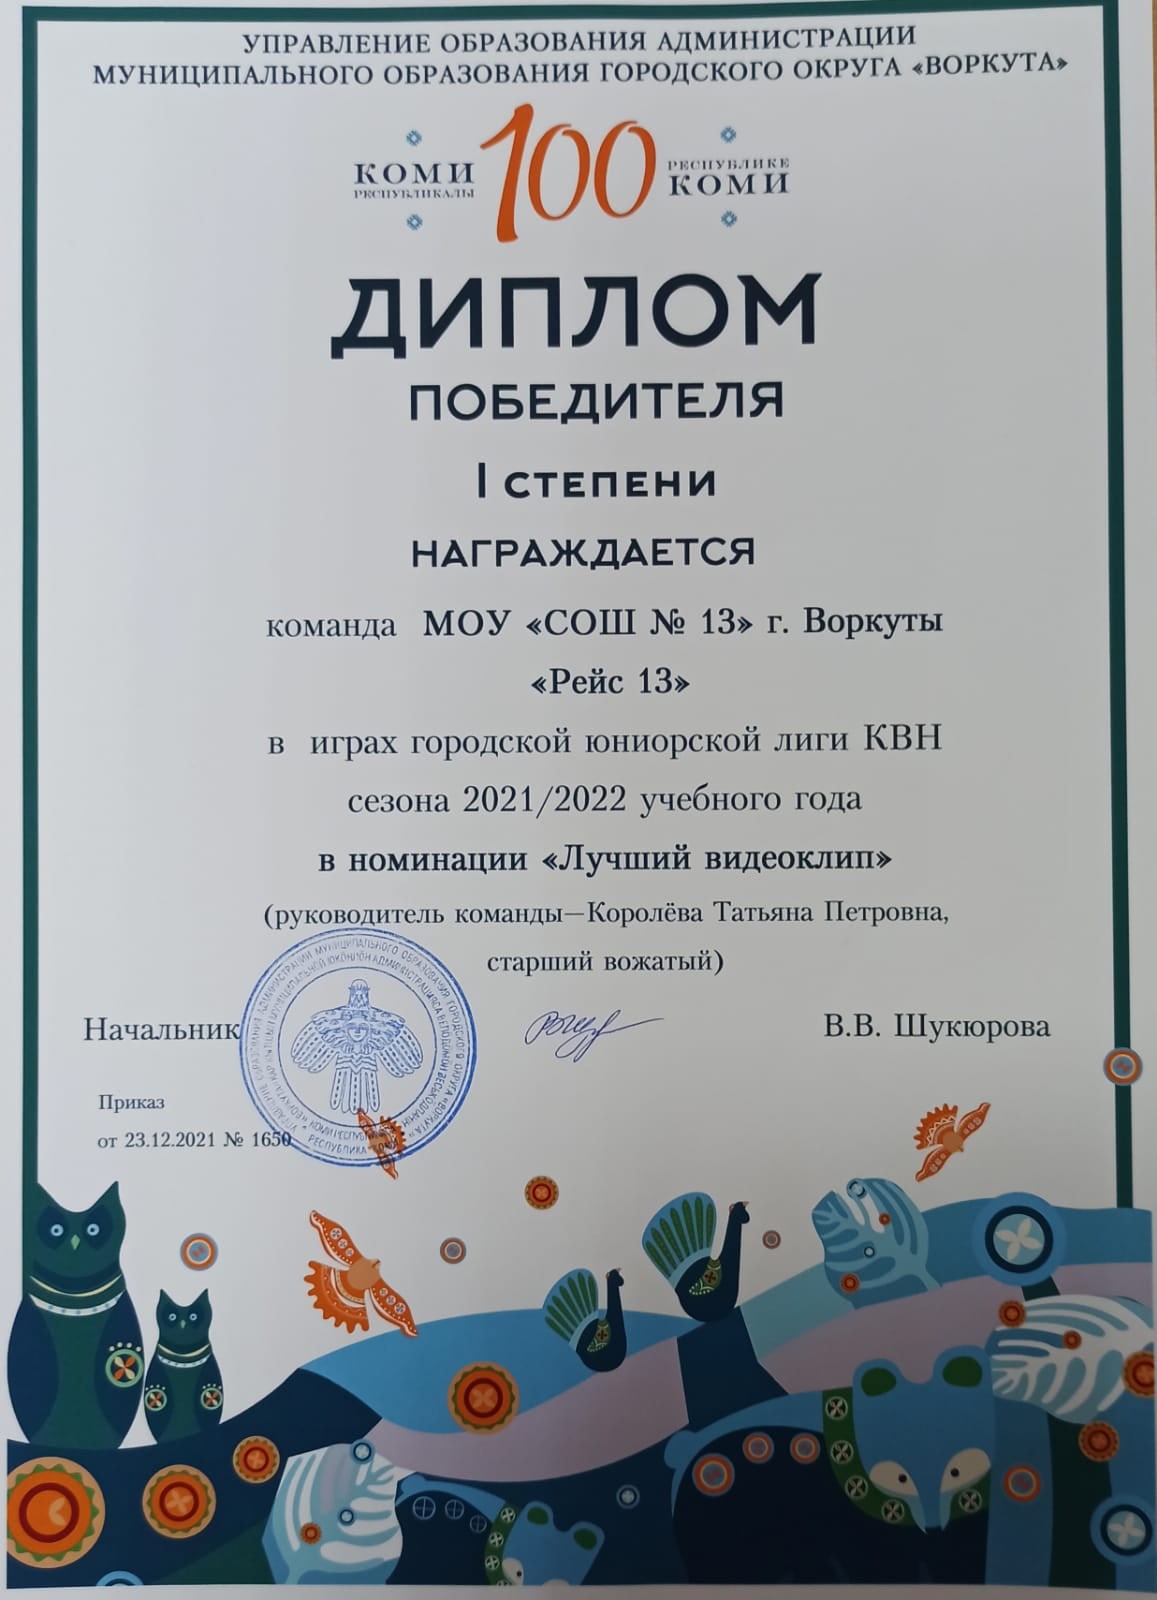 Диплом победителя I степени в играх городской юниорской лиги КВН сезона 2021/2022 года в номинации "Лучший видеоклип"